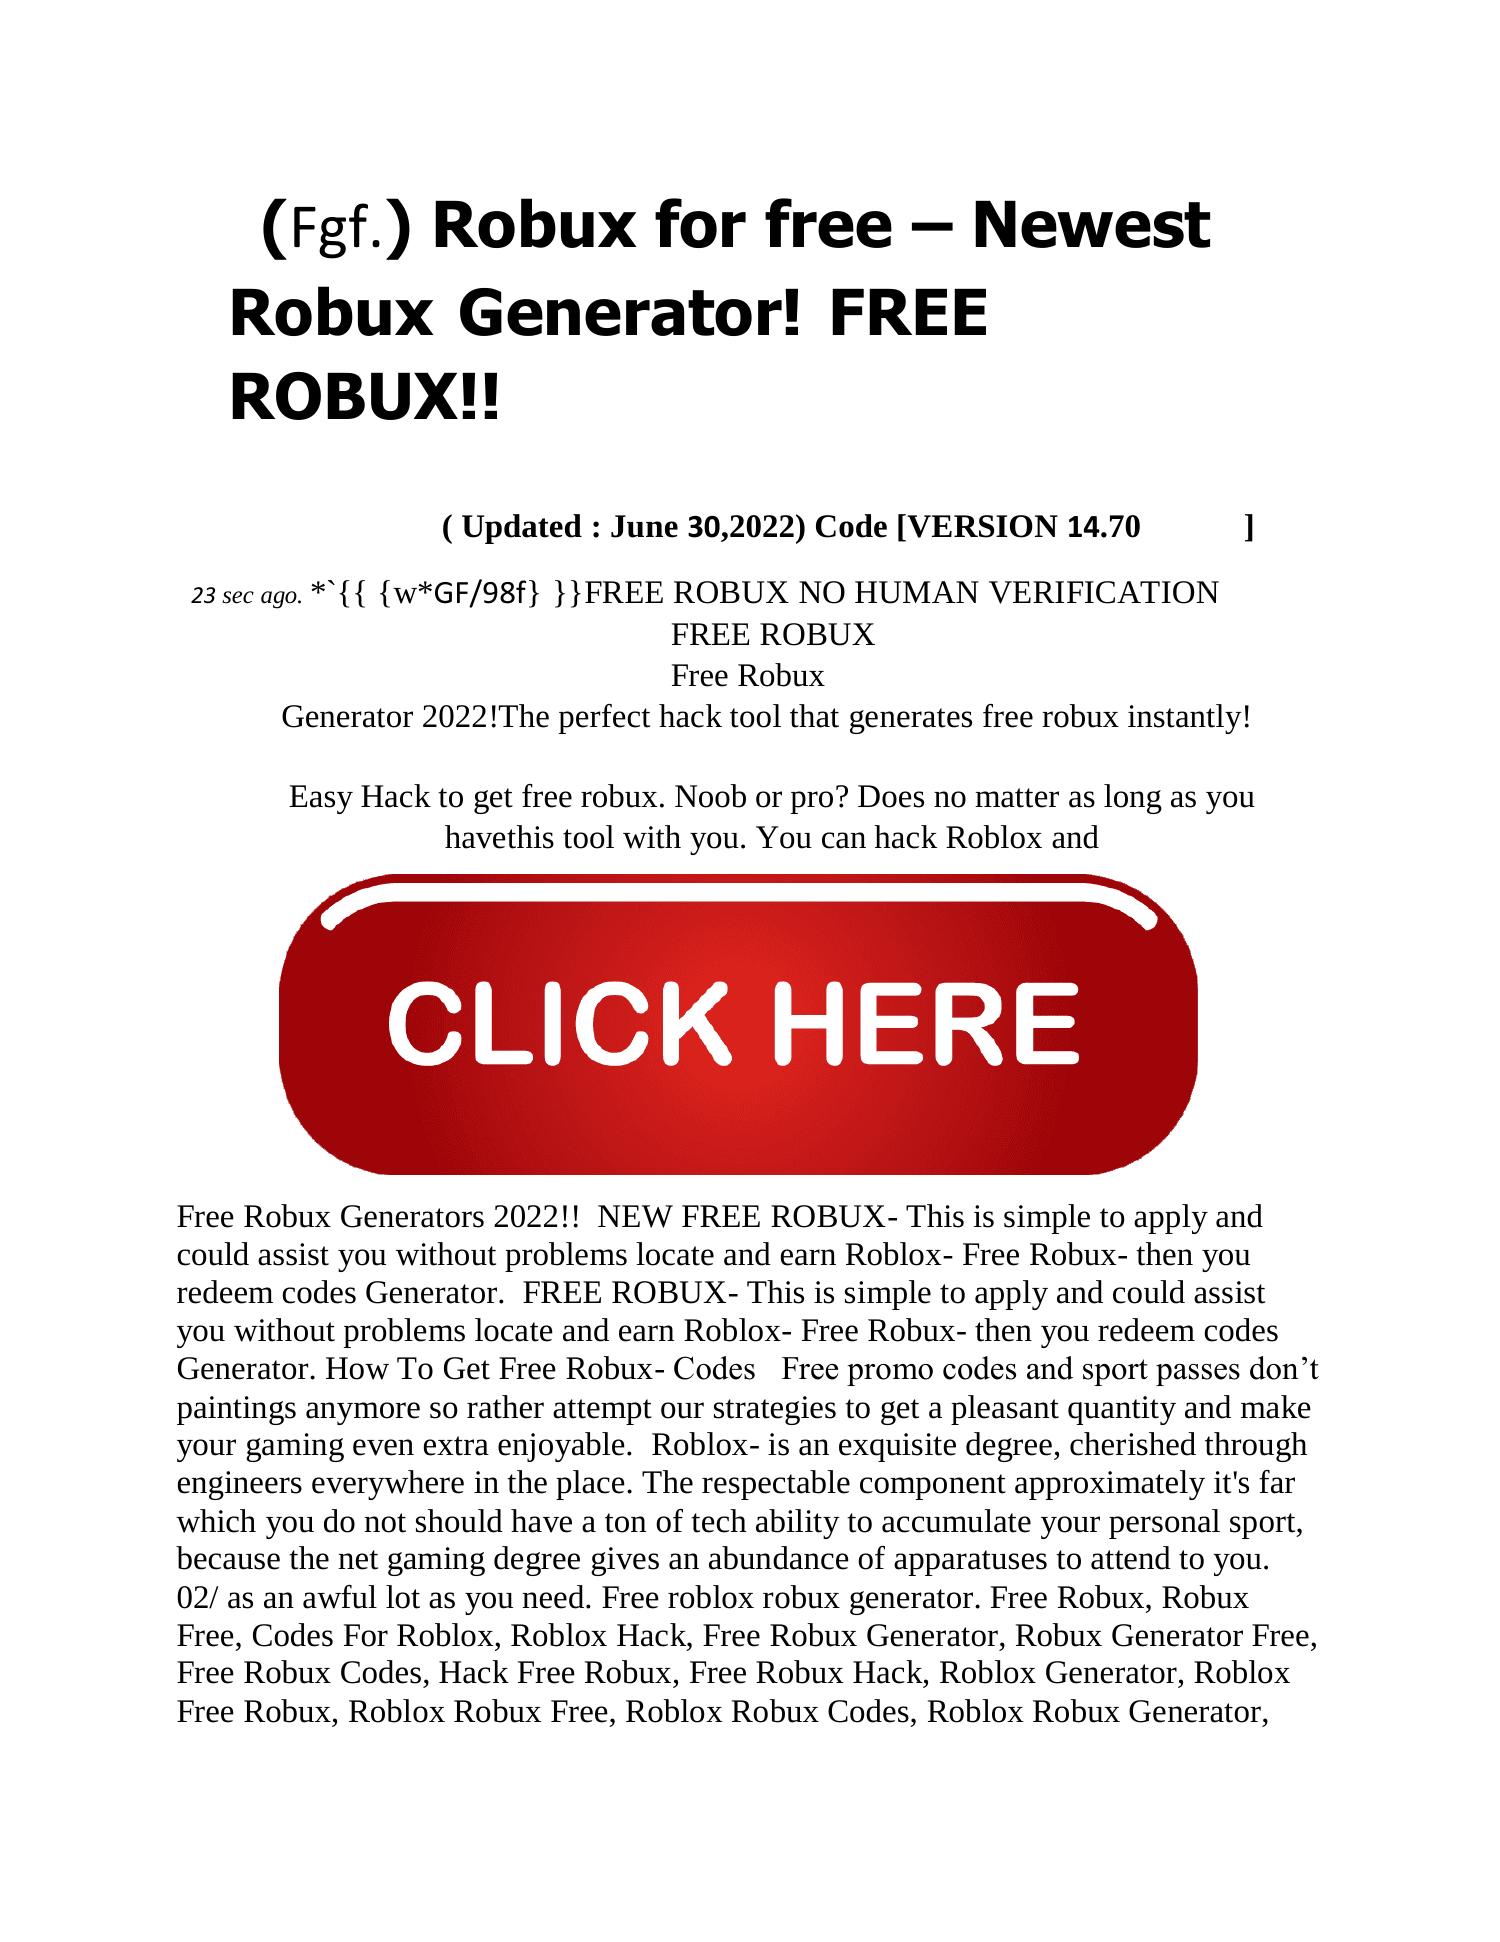 Free Robux Gene